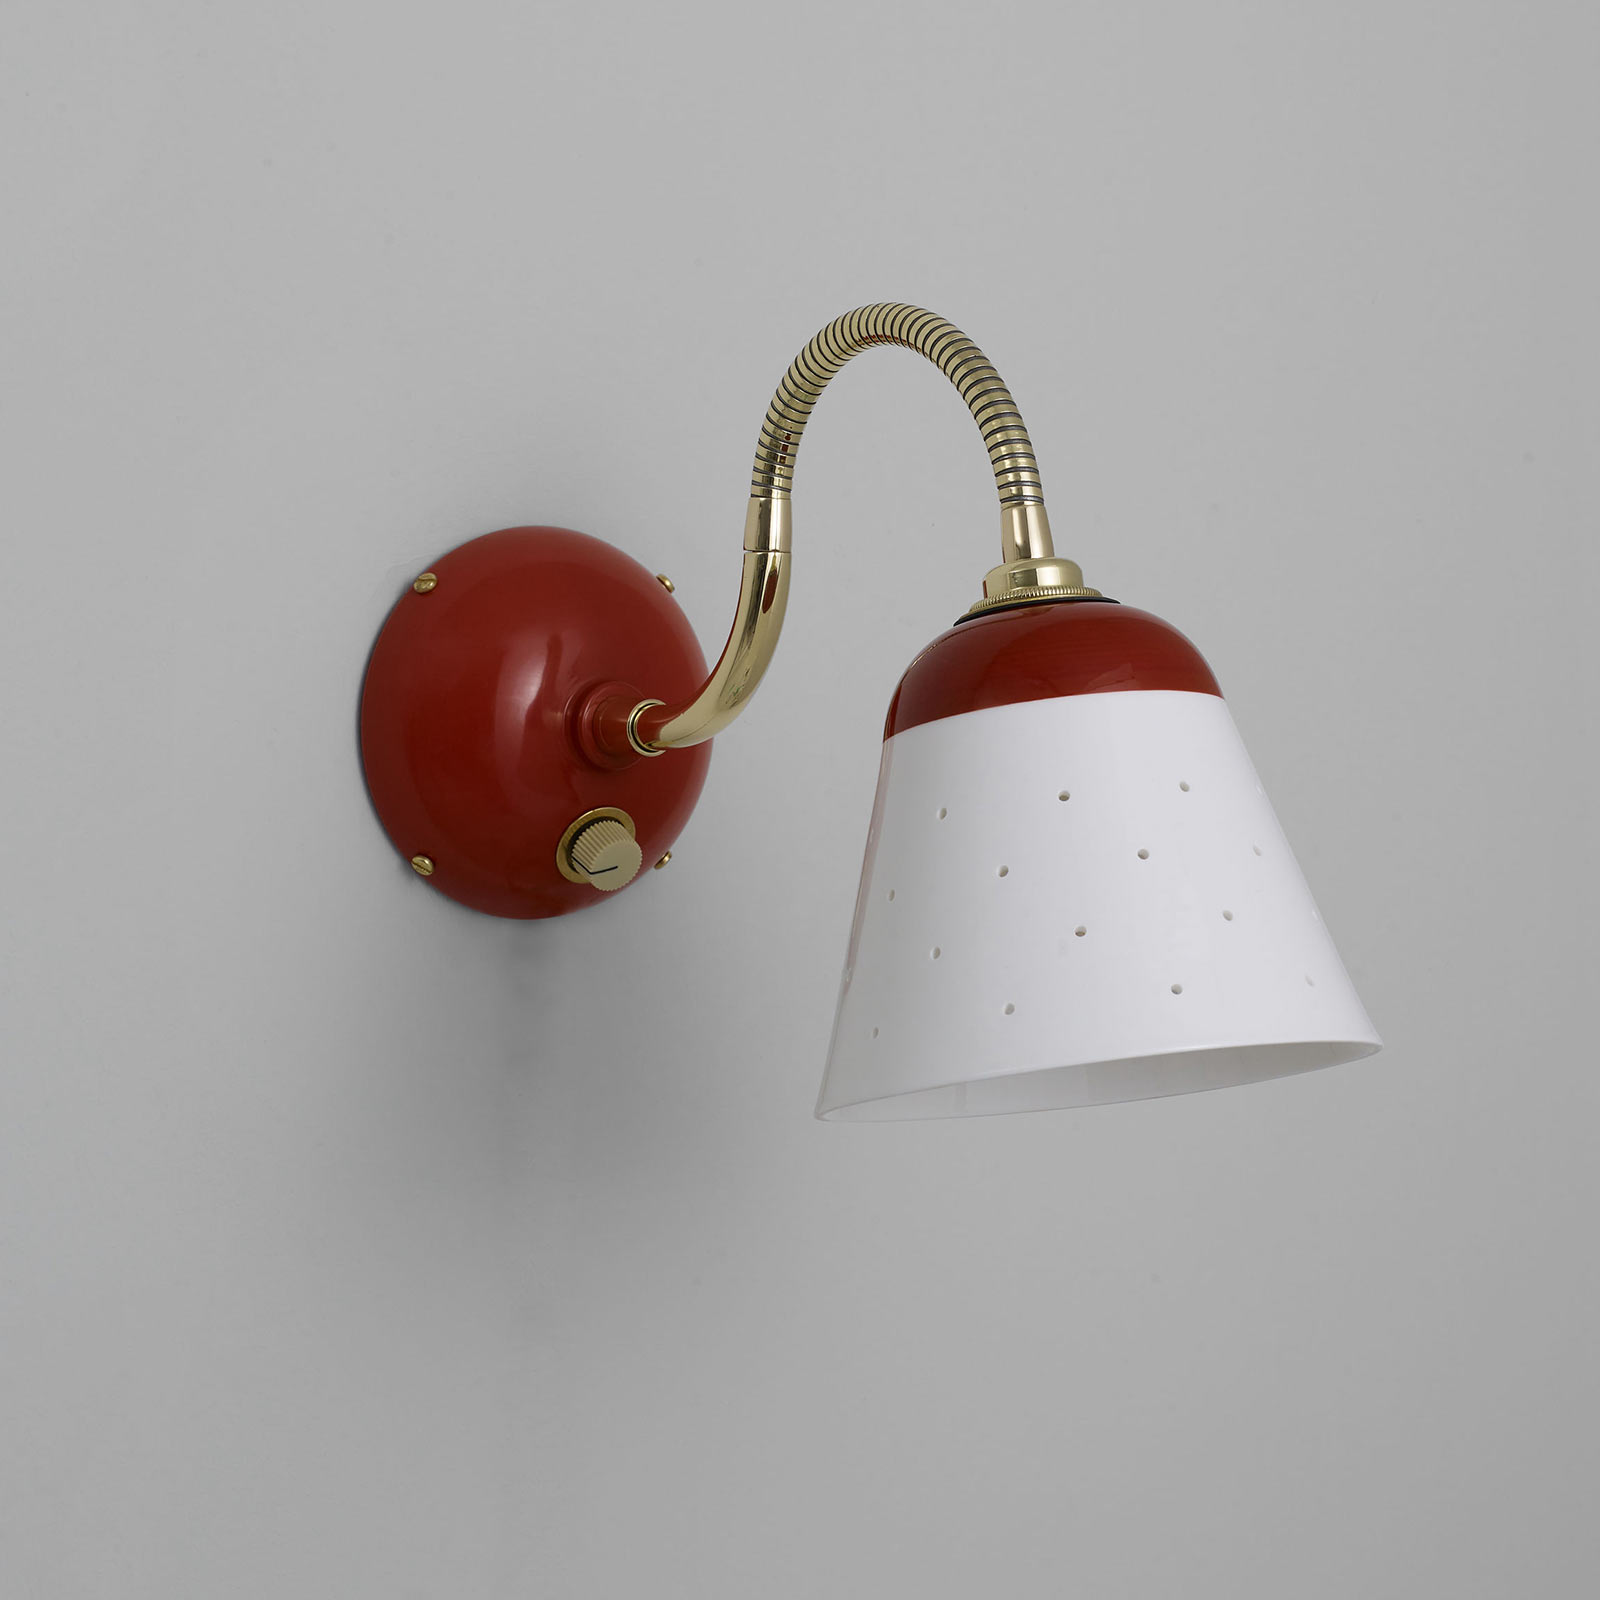 Flexible Wandleuchte ALMA mit perforiertem Porzellan-Schirm im Stil der 1950er: Version zum Direkt-Anschluss mit Dimmer, Ausführung Korallen-Rot